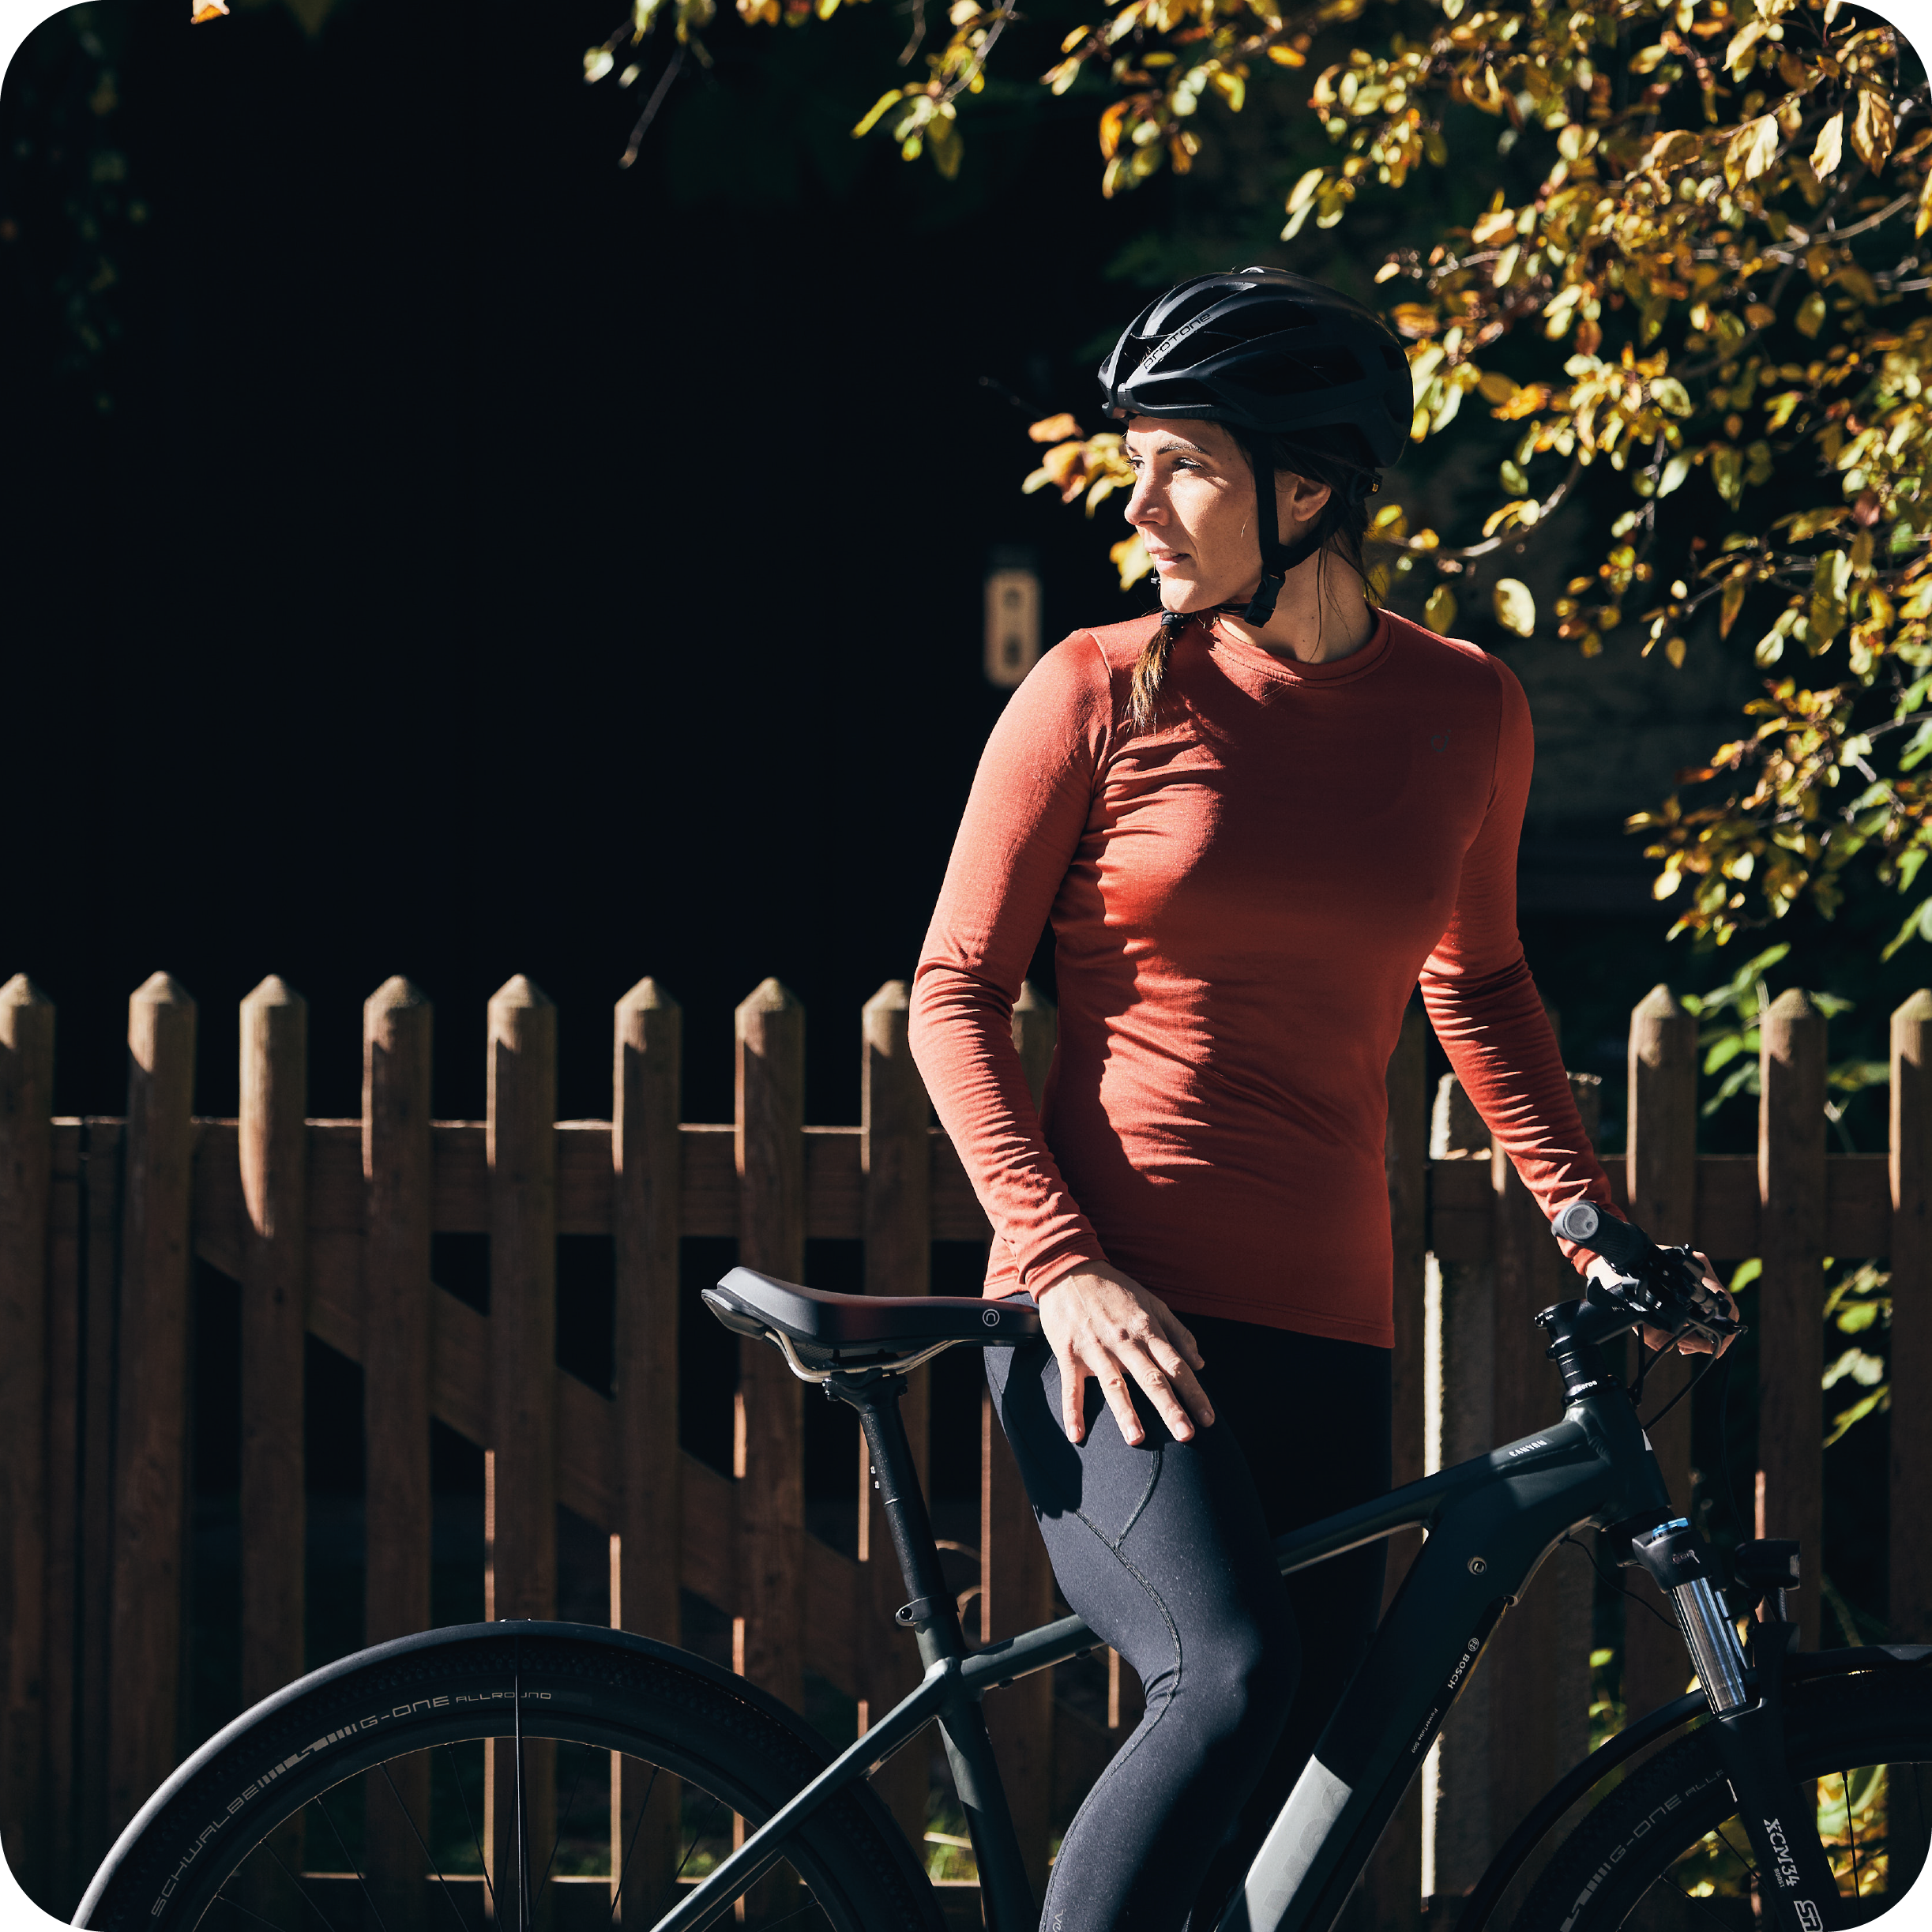 E-bike e comodità: scegli una sella comoda ed ergonomica per la tua bici elettrica